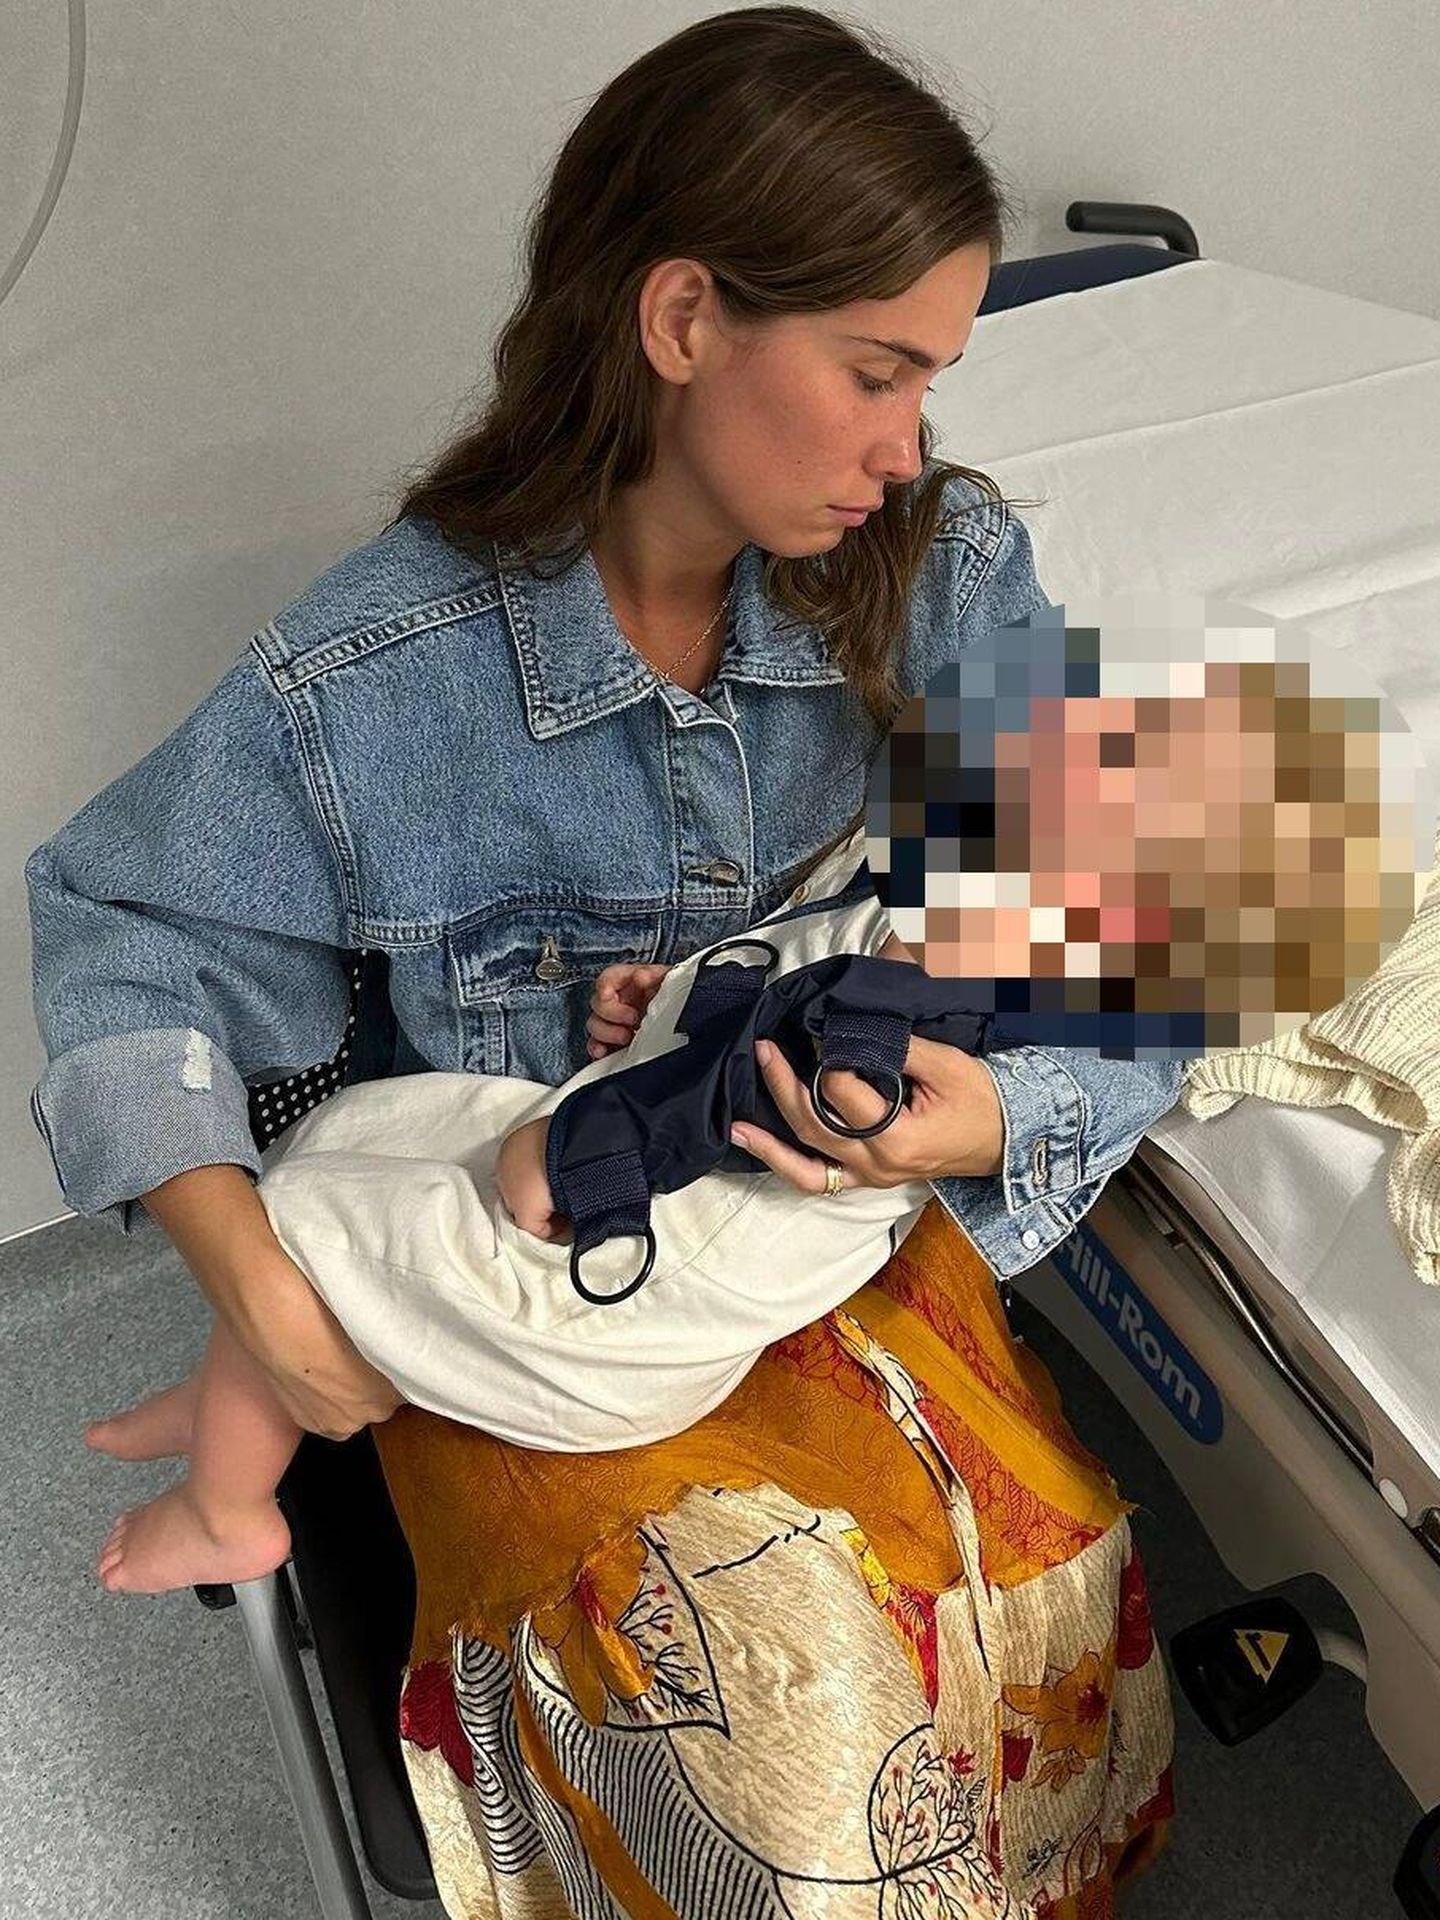 María, con su hijo Martín en brazos tras su incidente. (Instagram/@mariapombo)